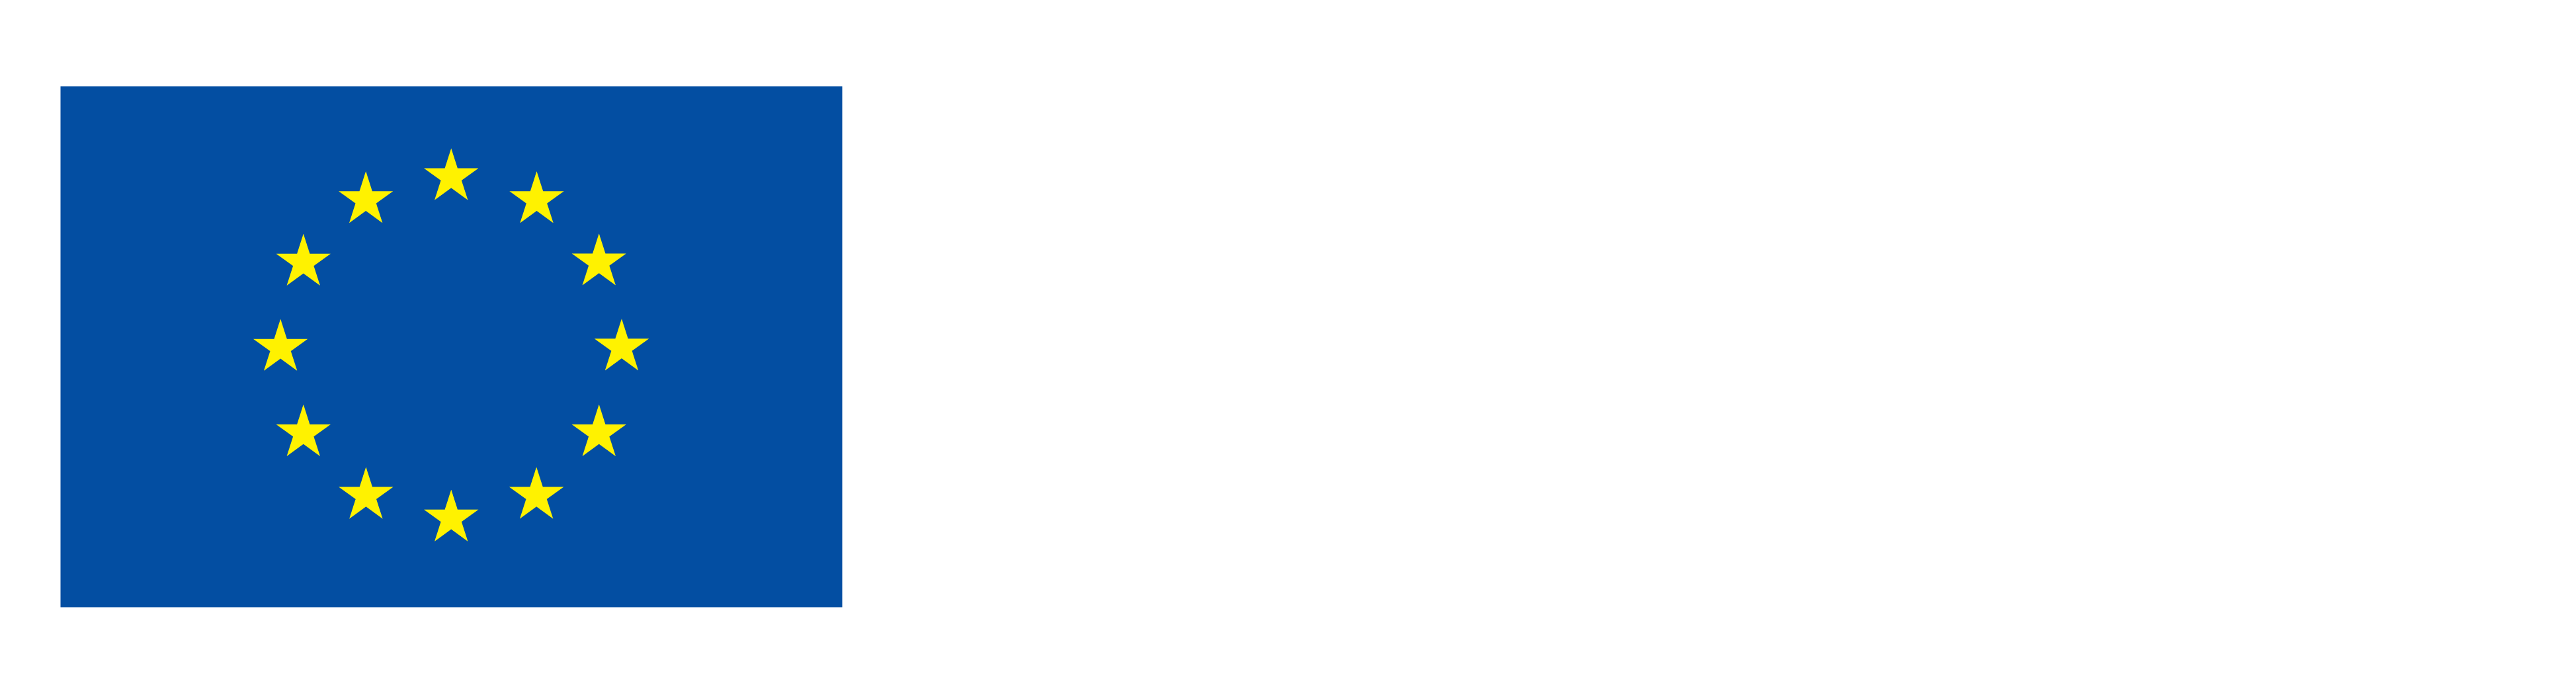 Funded by the European Union NextGenerationUE